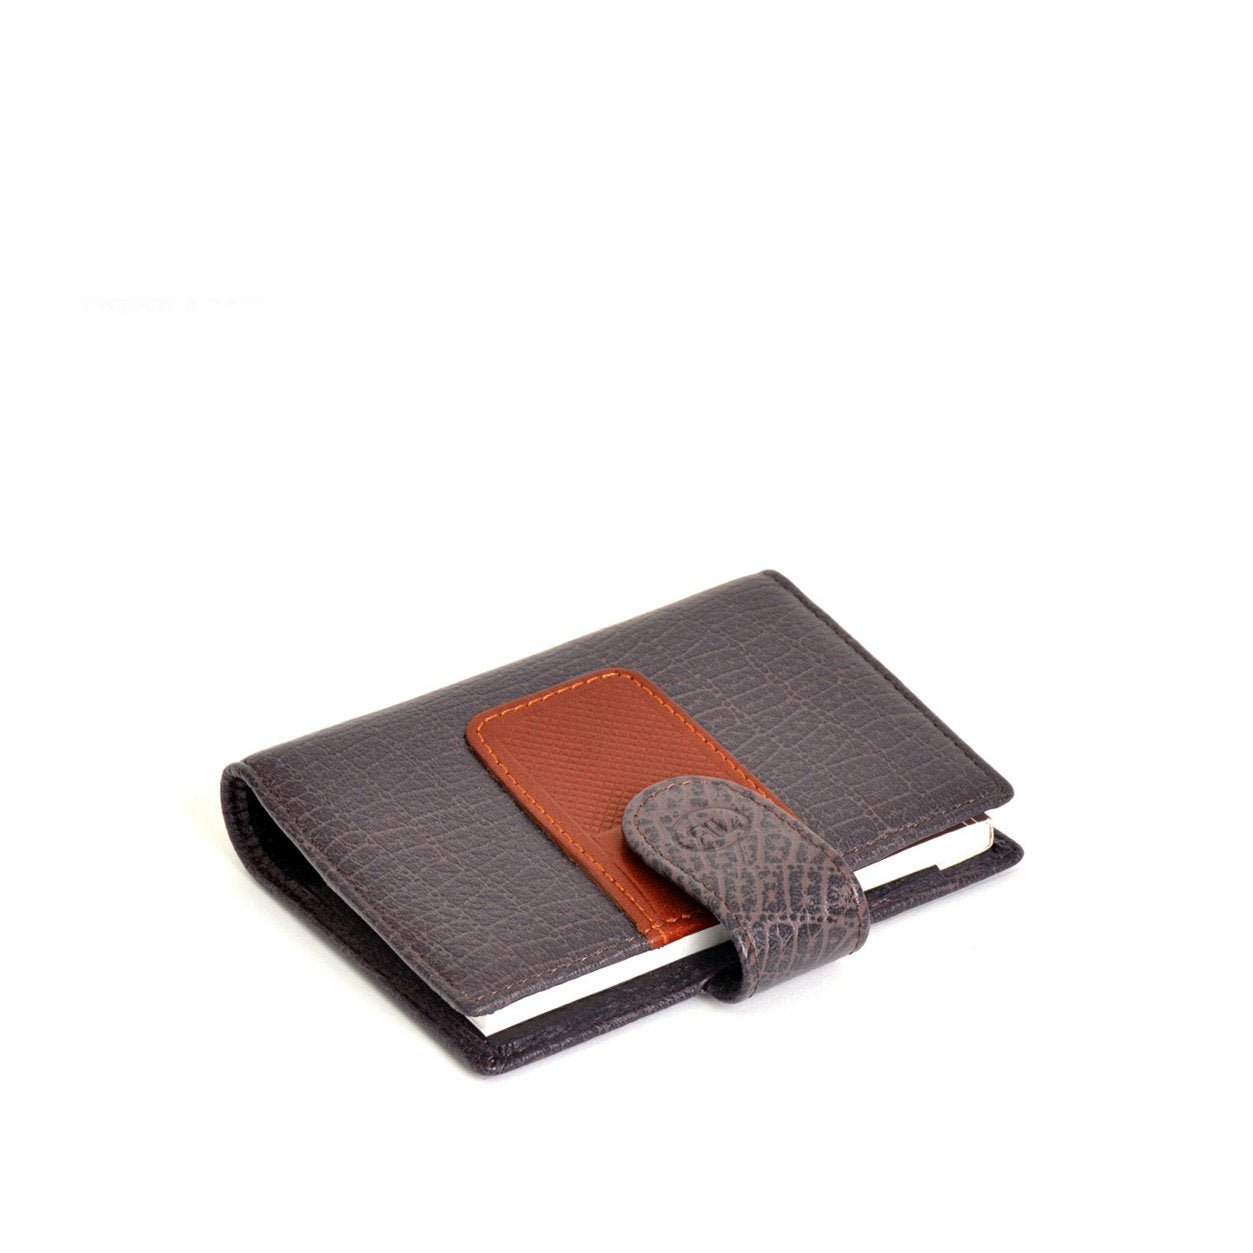 RENATO LANDINI Wallet w/ Notepad/ Pursuit